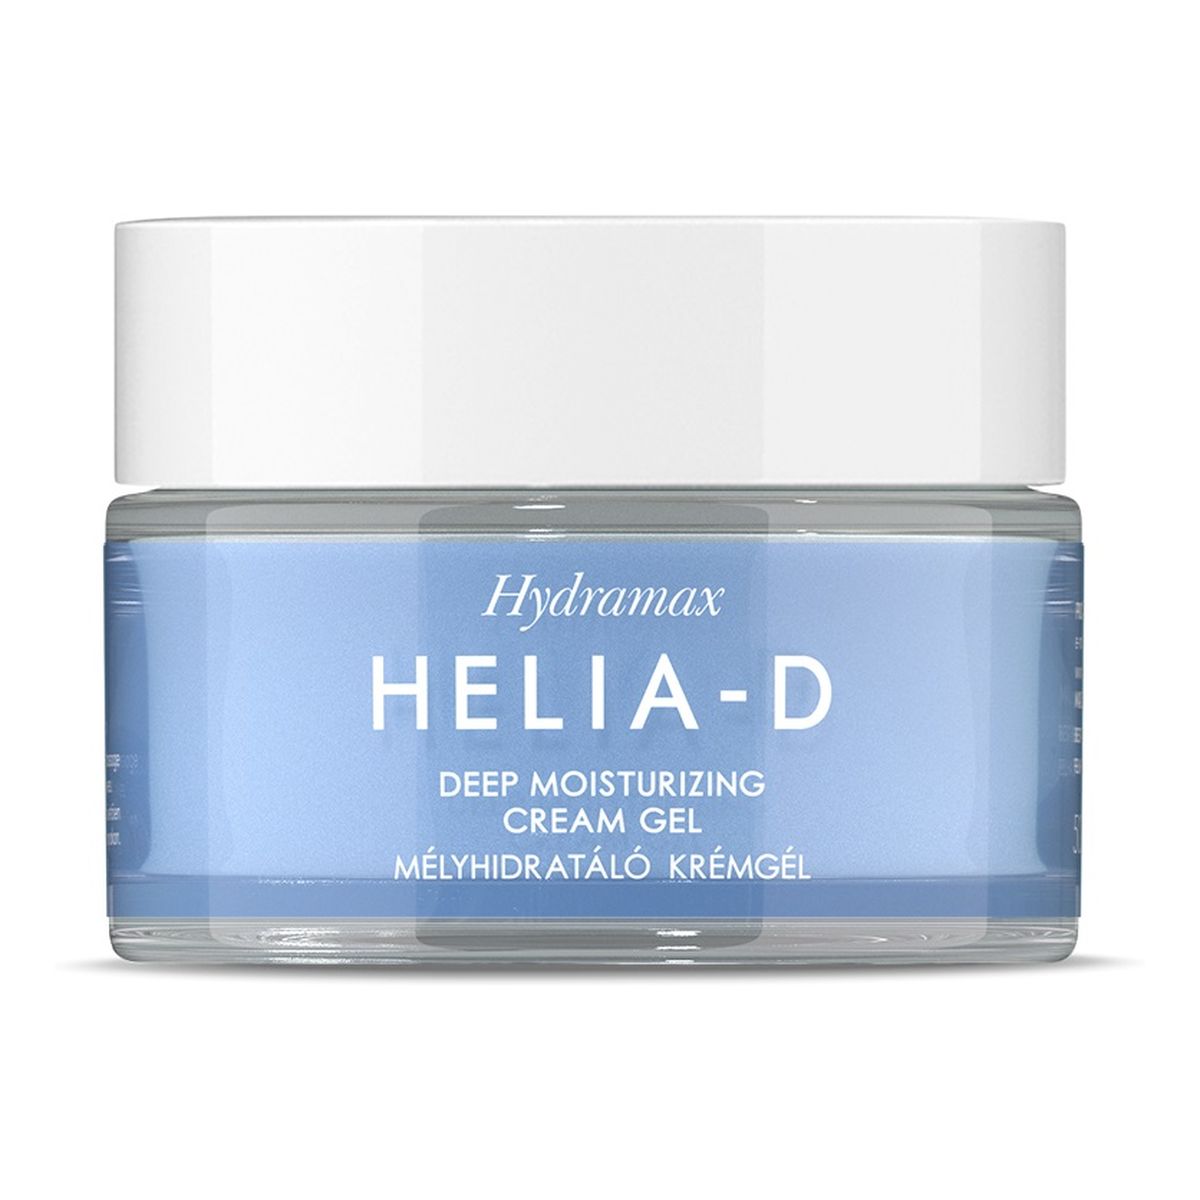 Helia-D Hydramax Deep Moisturizing Cream Gel głęboko nawilżający Krem-żel do cery normalnej 50ml